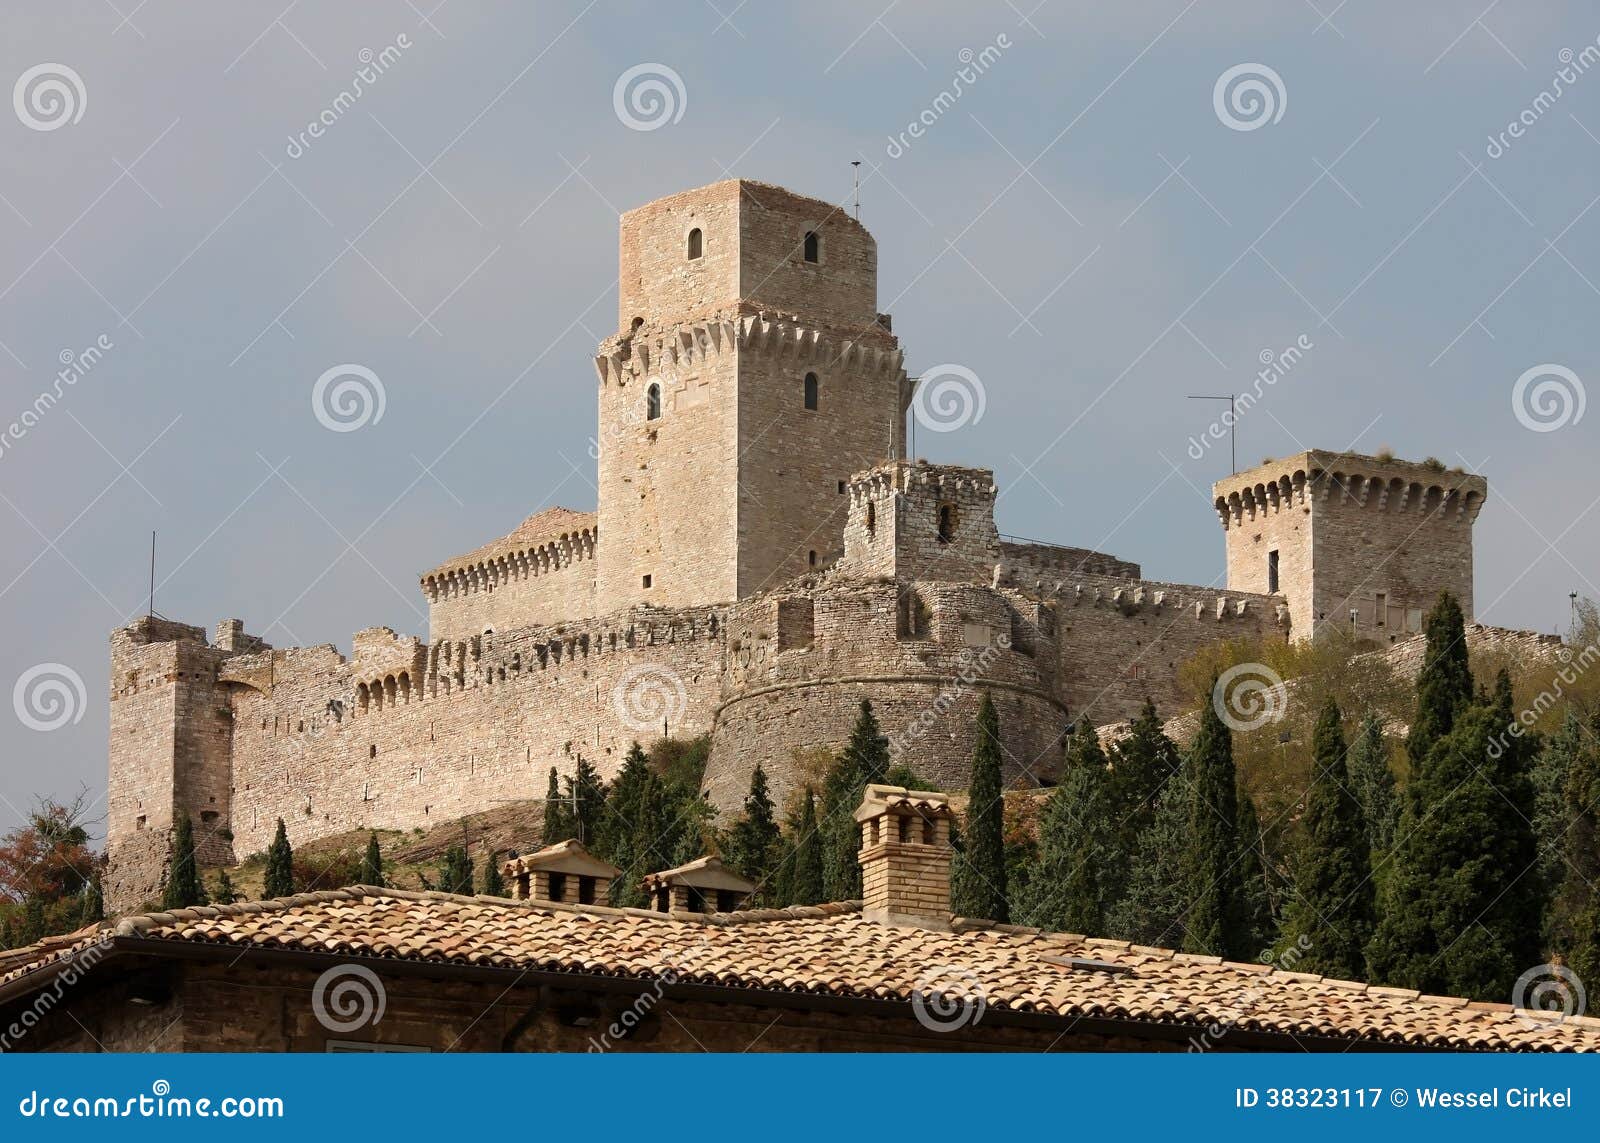 rocca maggiore, medieval castle, assisi